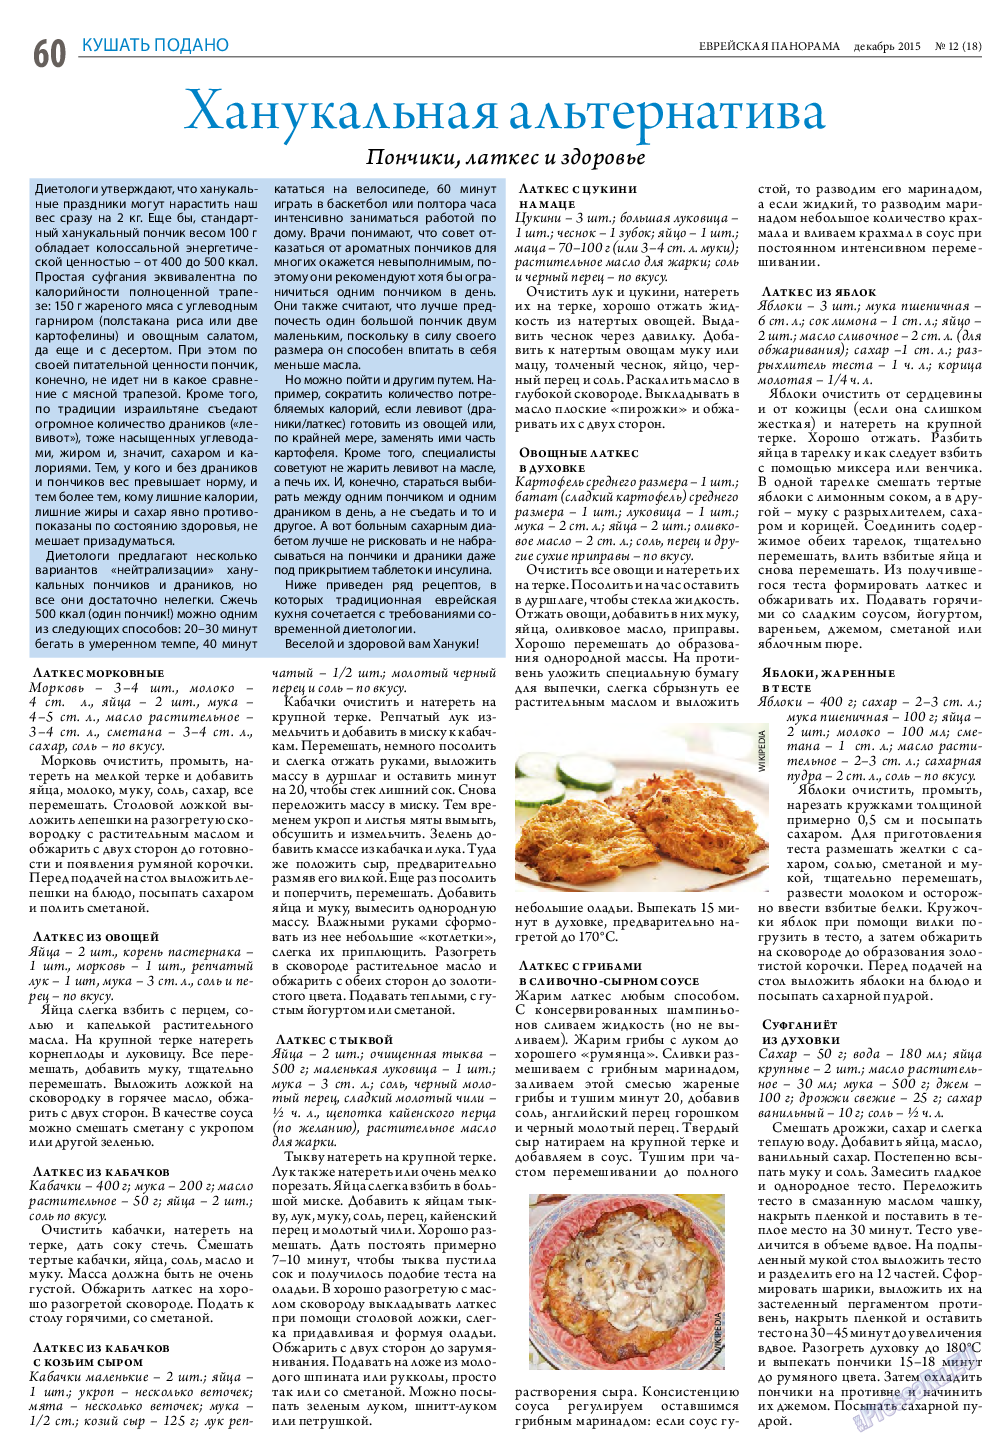 Еврейская панорама (газета). 2015 год, номер 12, стр. 60